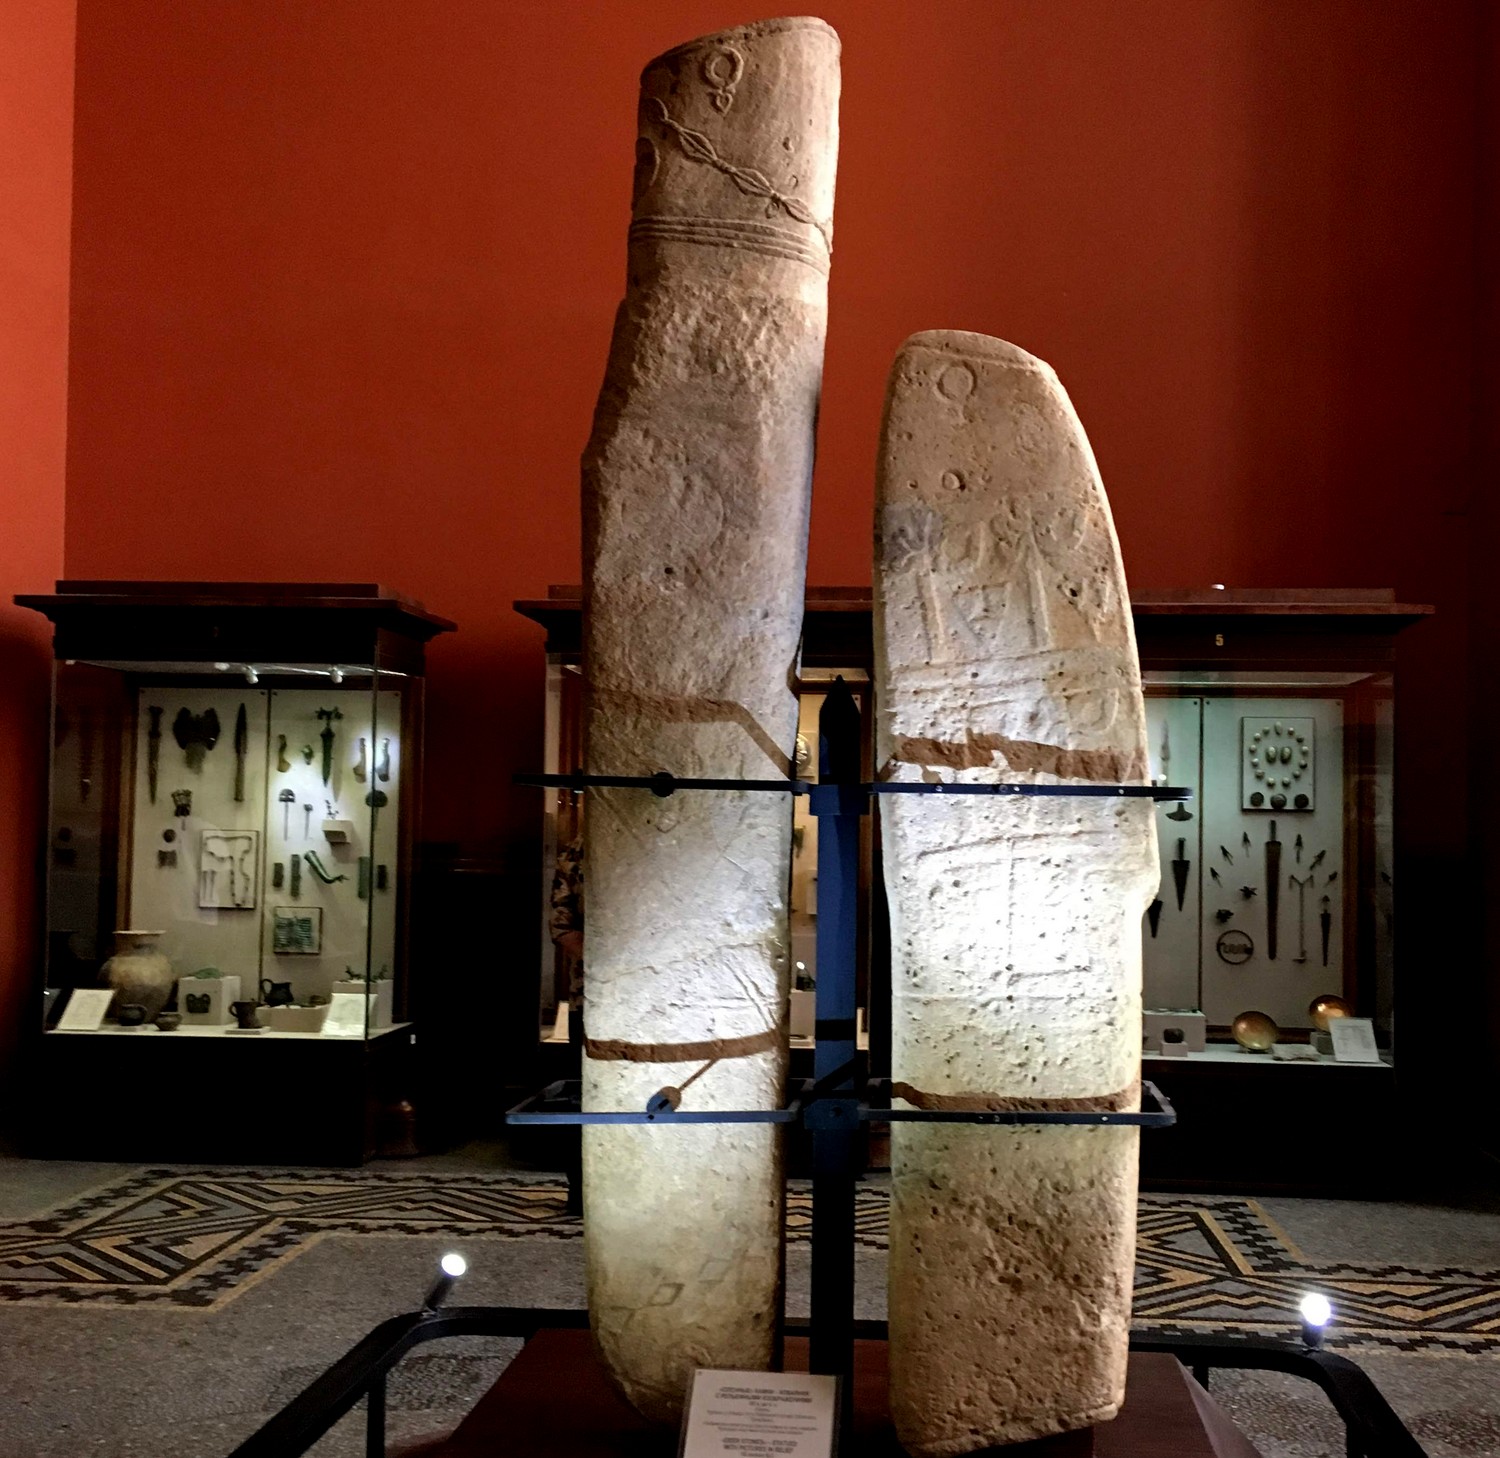 Оленные камни - изваяния с рельефными изображениями. VII век до н.э.